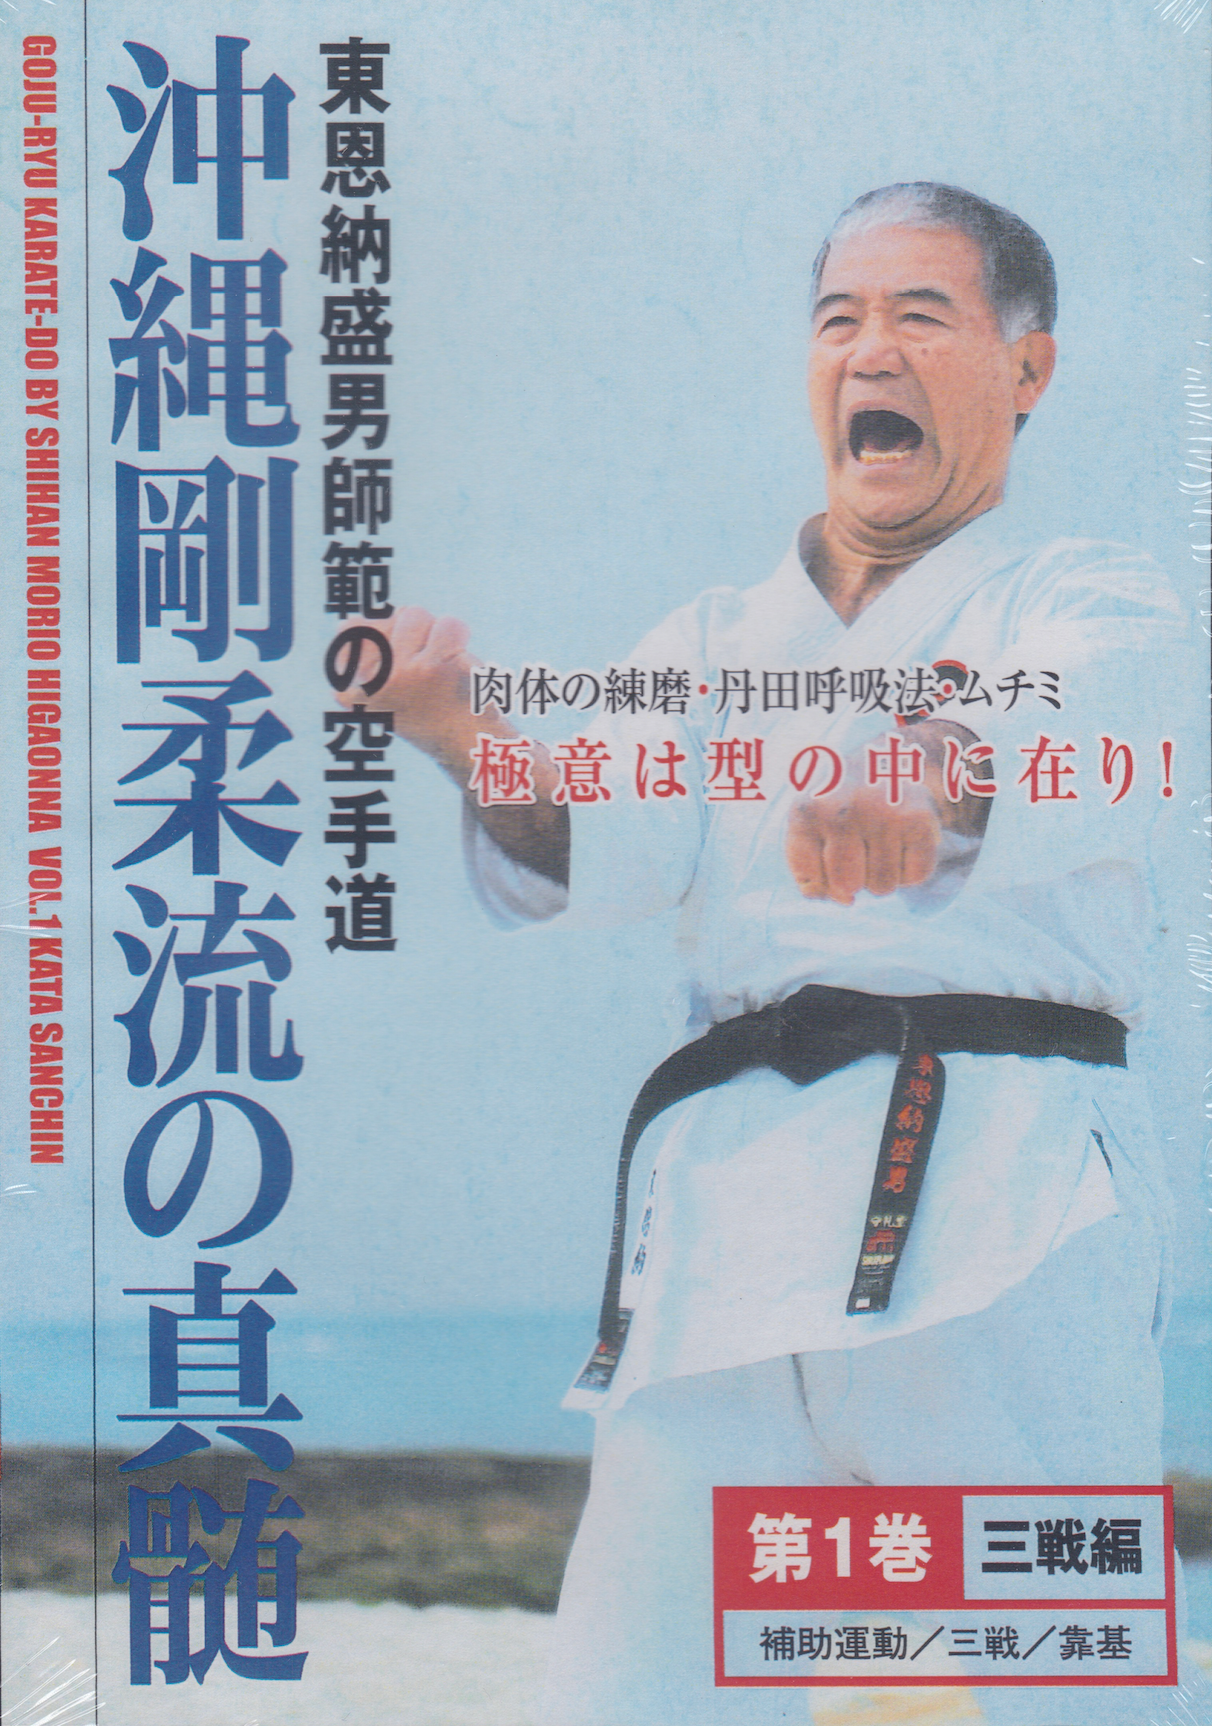 Goju Ryu Karate DVD 1: Sanchin Kata by Morio Higaonna